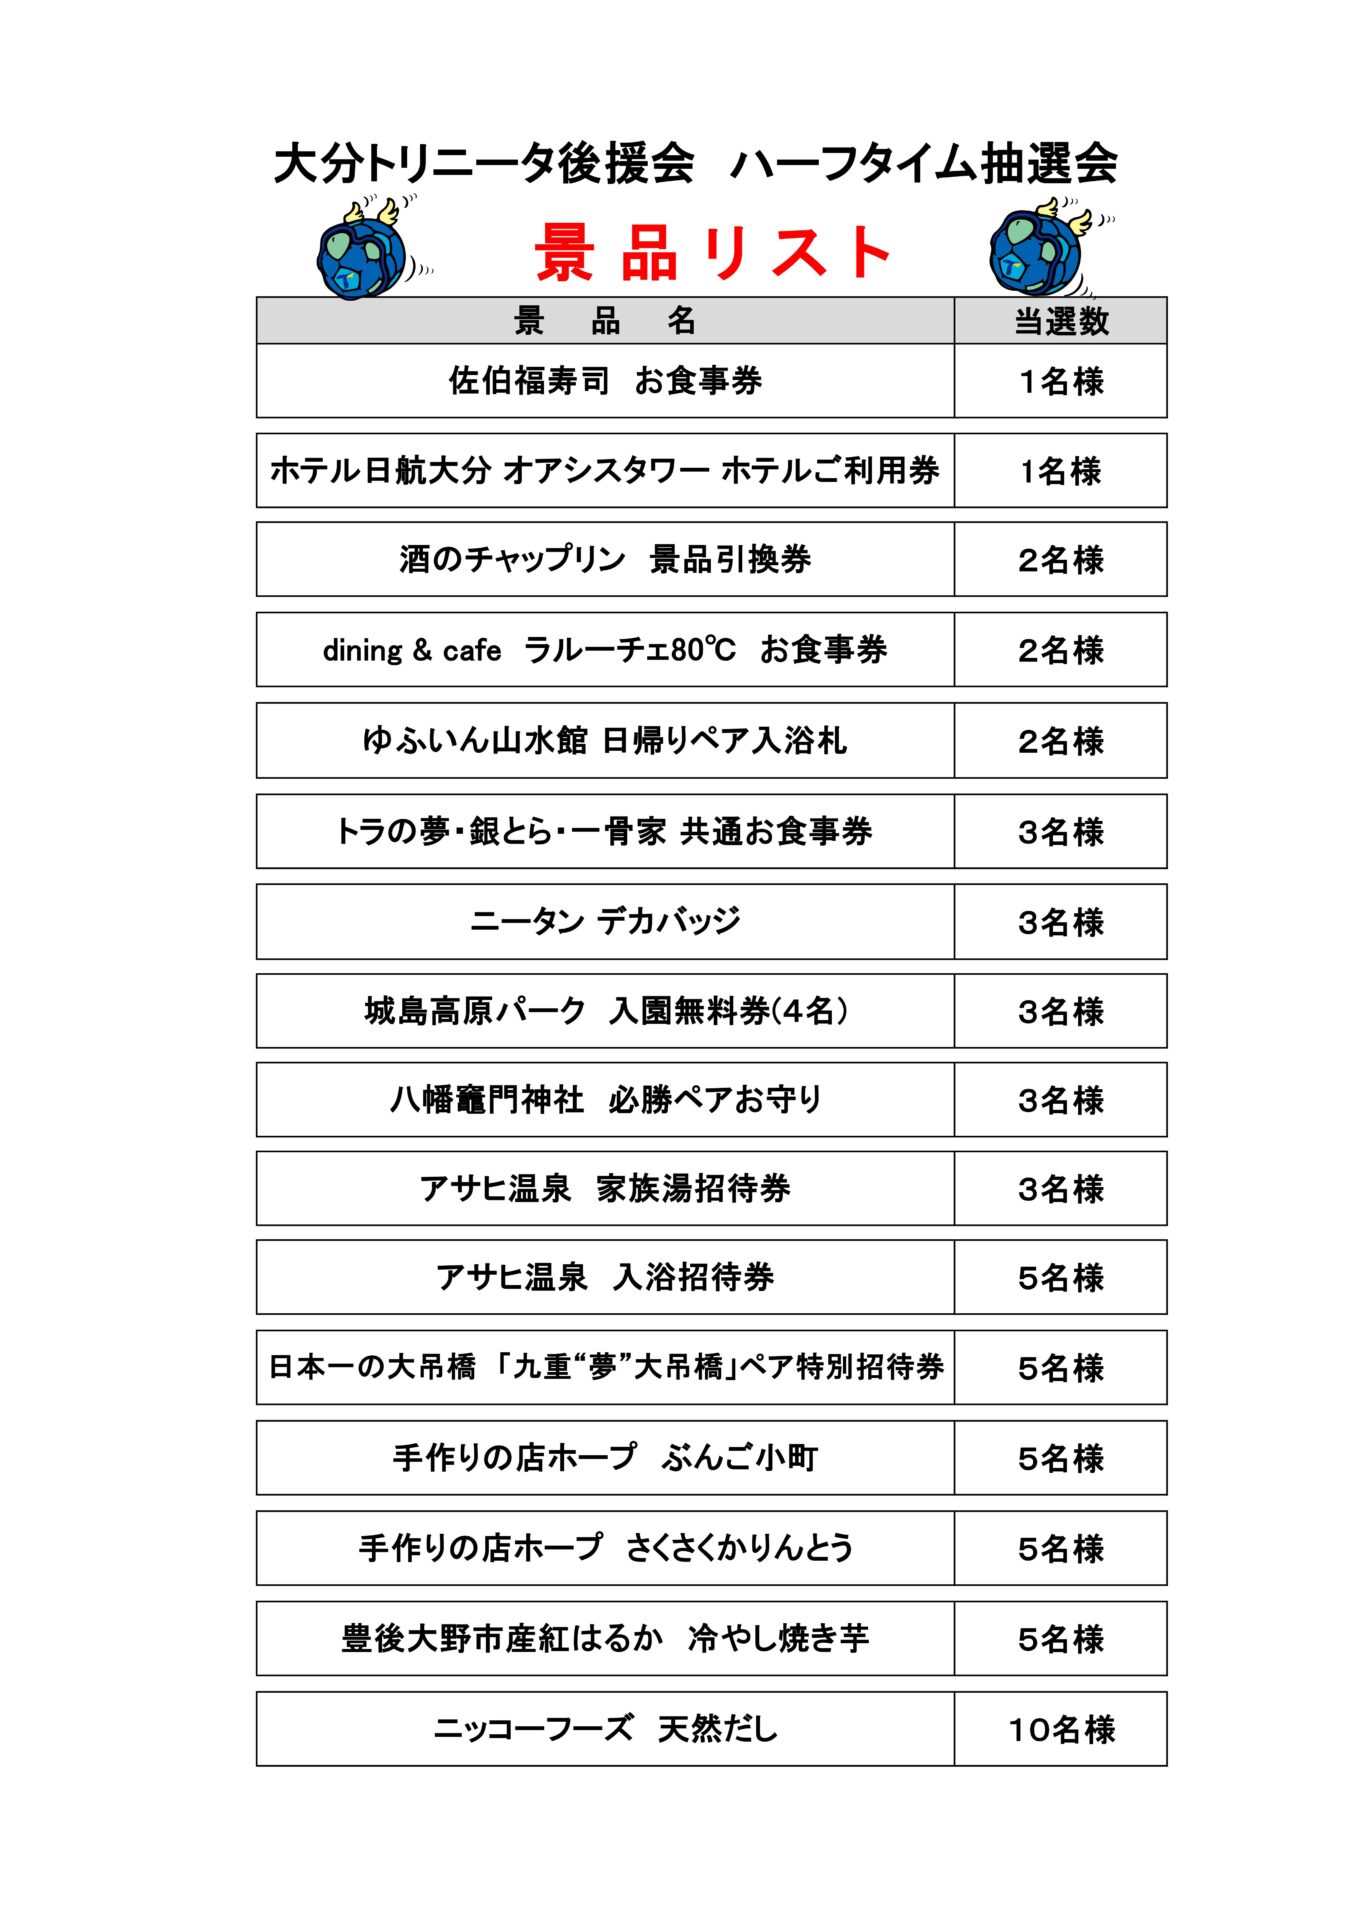 8/12(土)藤枝MYFC戦ハーフタイム抽選会のお知らせ